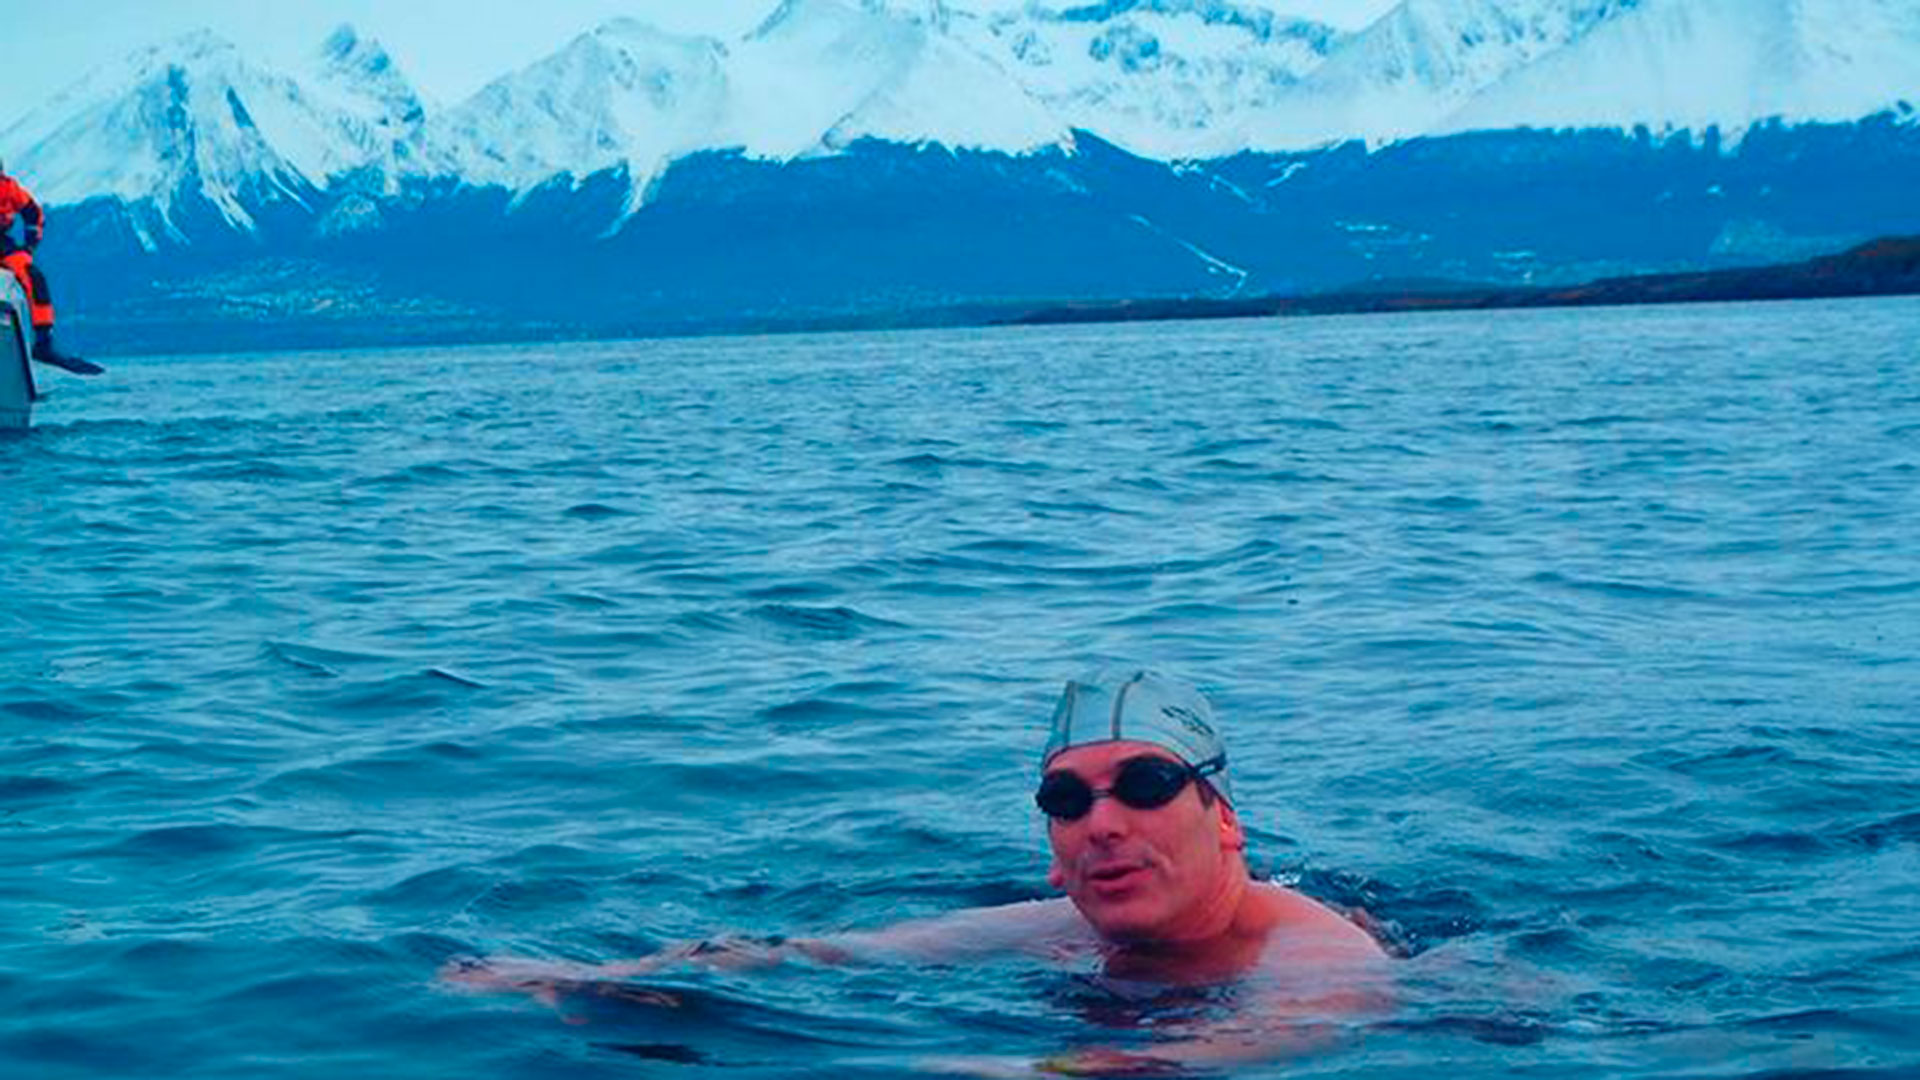 Ese primer cruce en aguas abiertas frías lo hizo en 2004 enfundado en un traje de neoprene, pero como con el paso del tiempo el frío comenzaba a pasar, decidió quitárselo y quedar “en cueros” 

